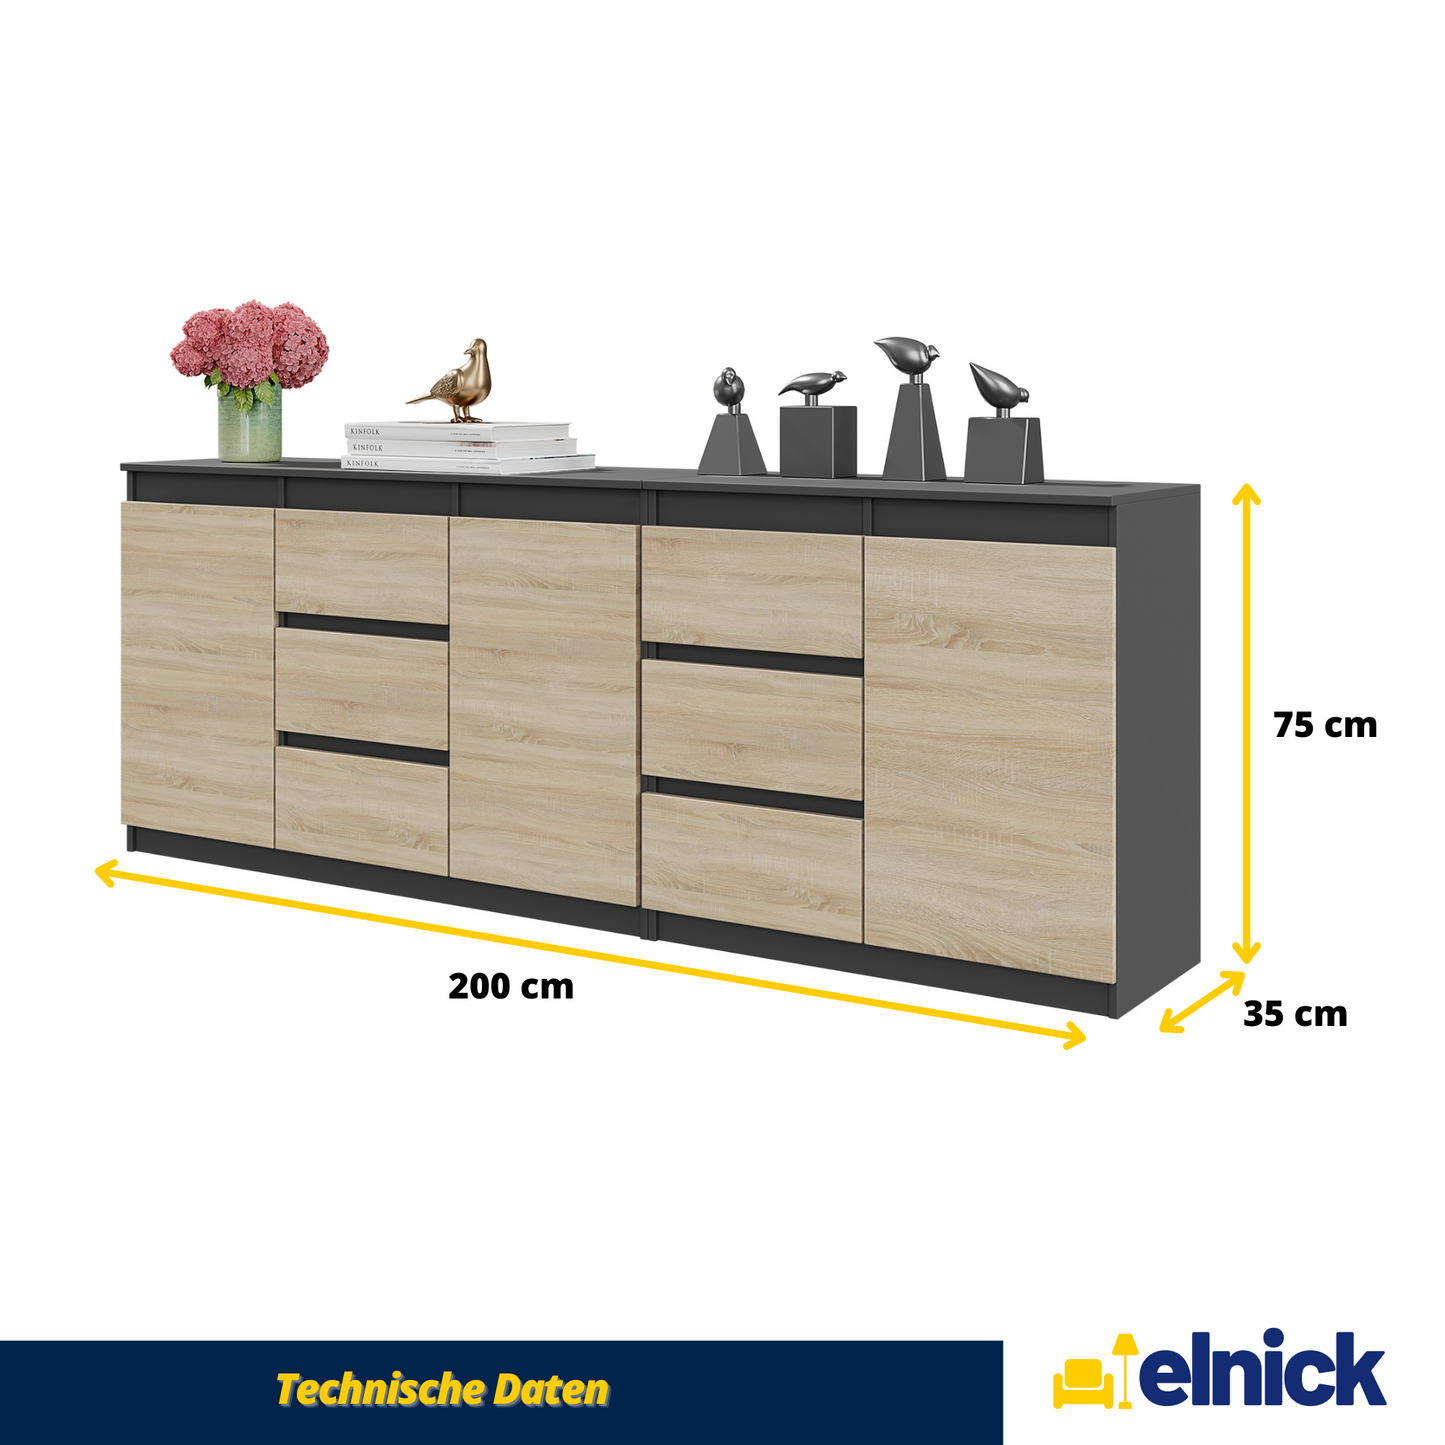 MIKEL - Kommode / Sideboard mit 6 Schubladen und 3 Türen - Anthrazit Grau / Sonoma Eiche